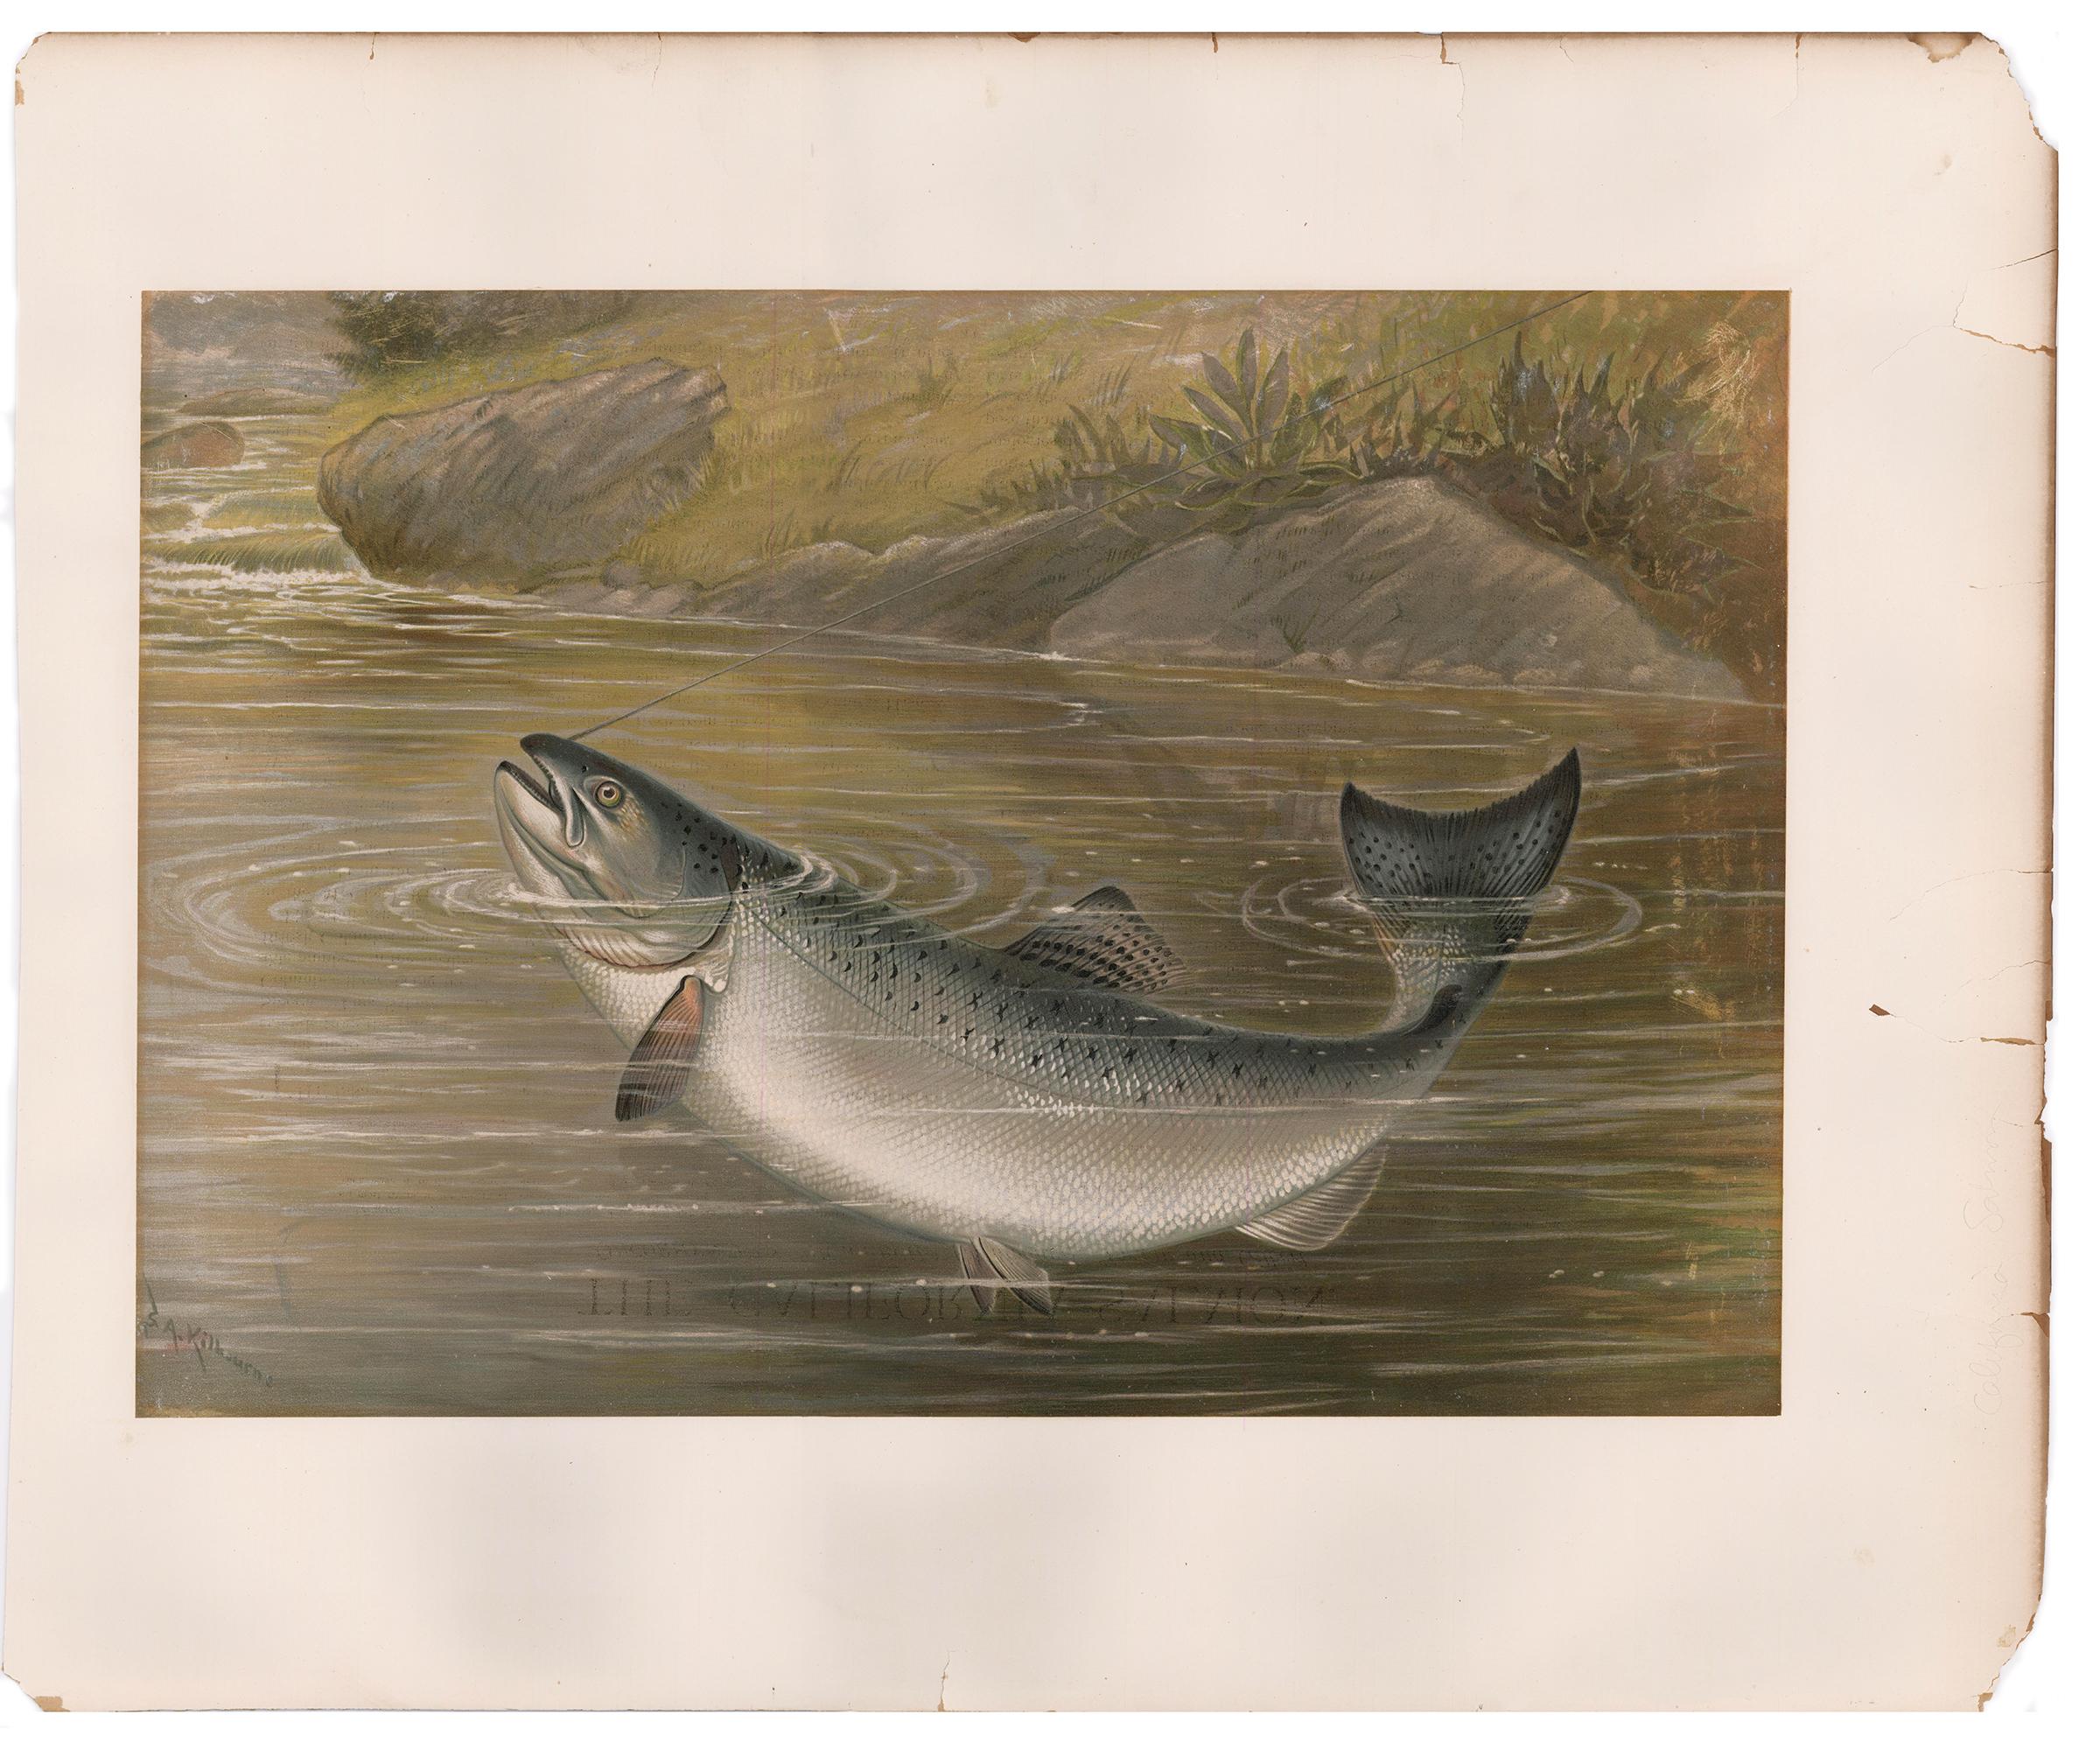 California Salmon. - Print by Samuel A. Kilbourne